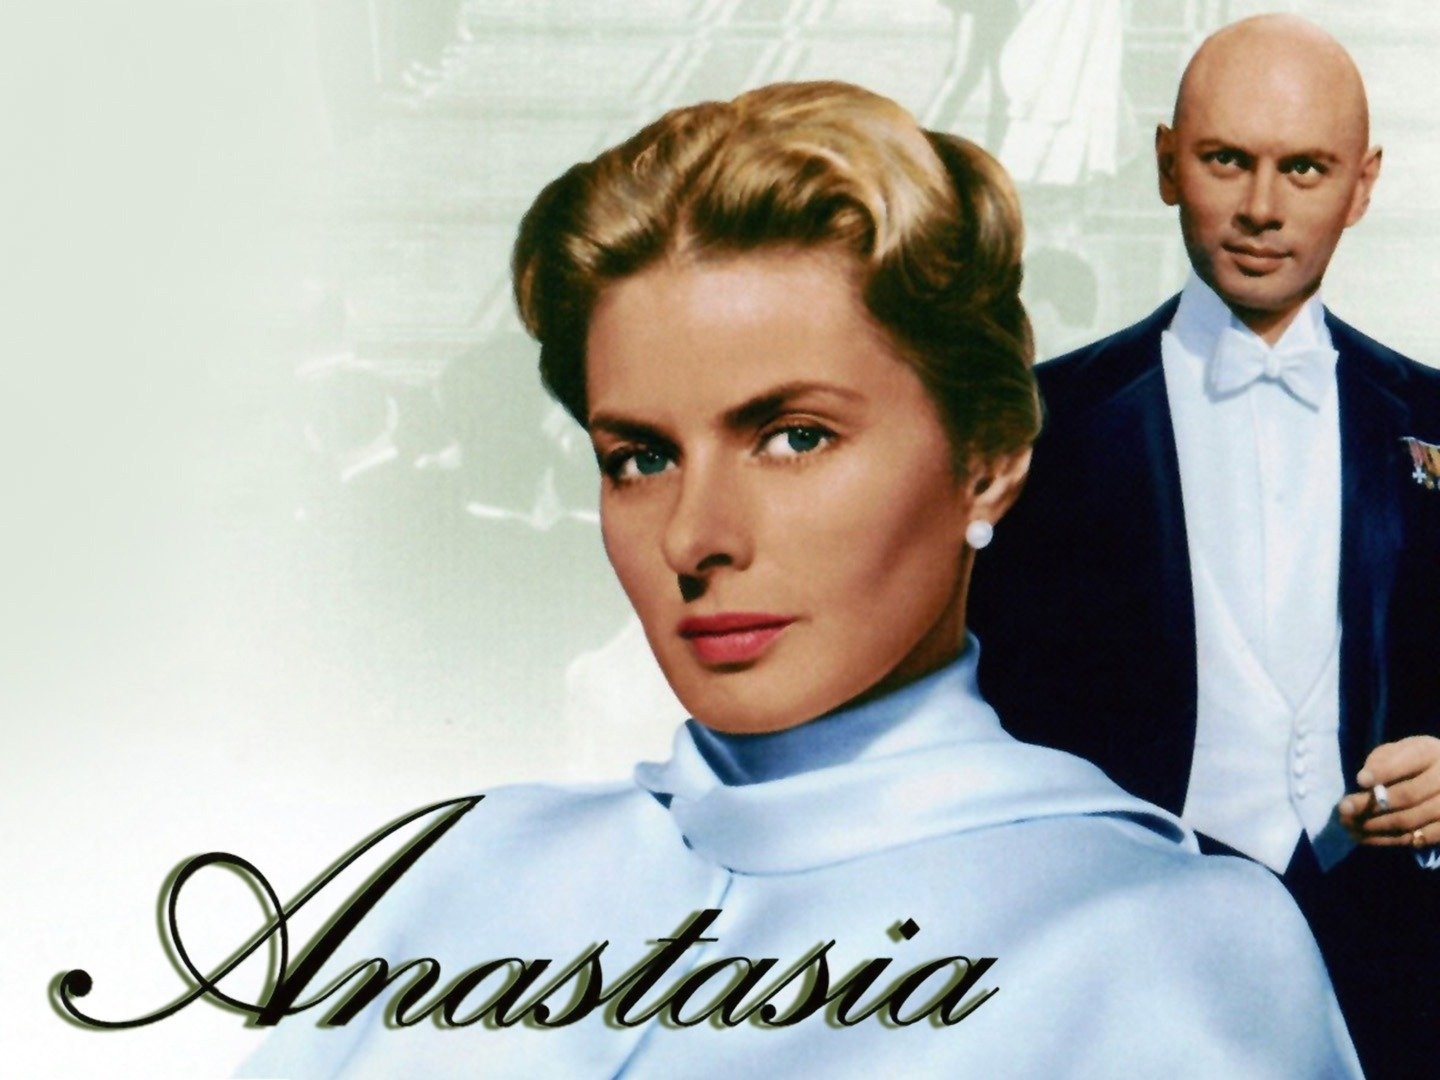 Anastasia 